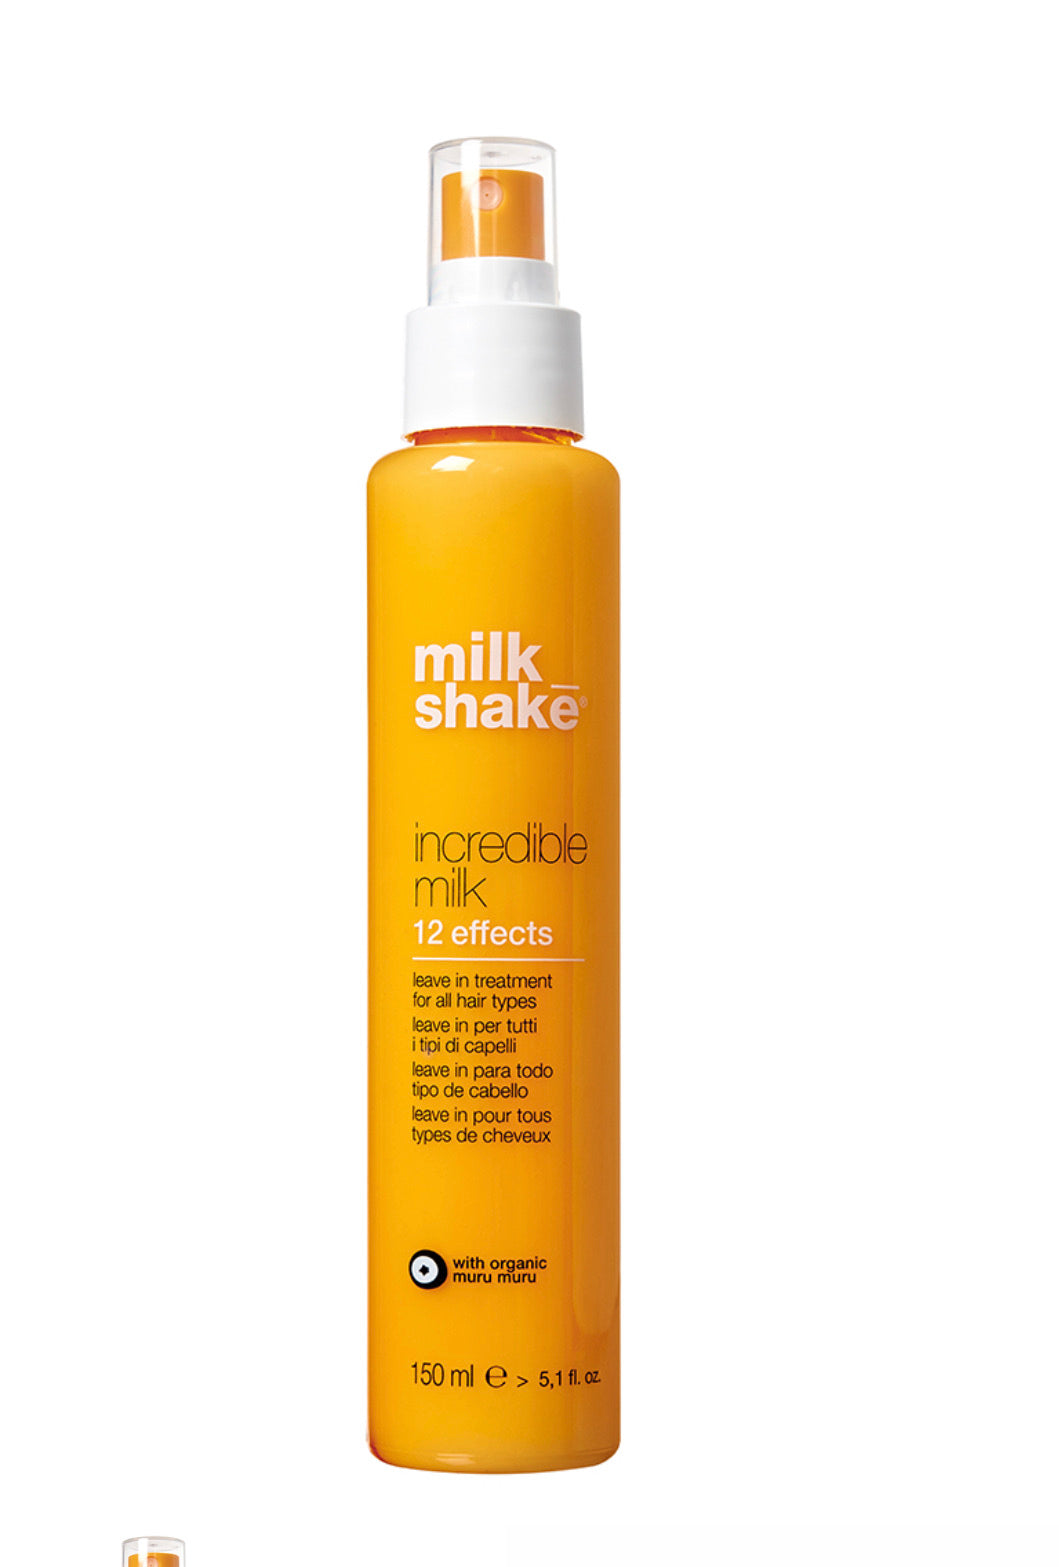 milk_shake incredible milk - Salon Elemis